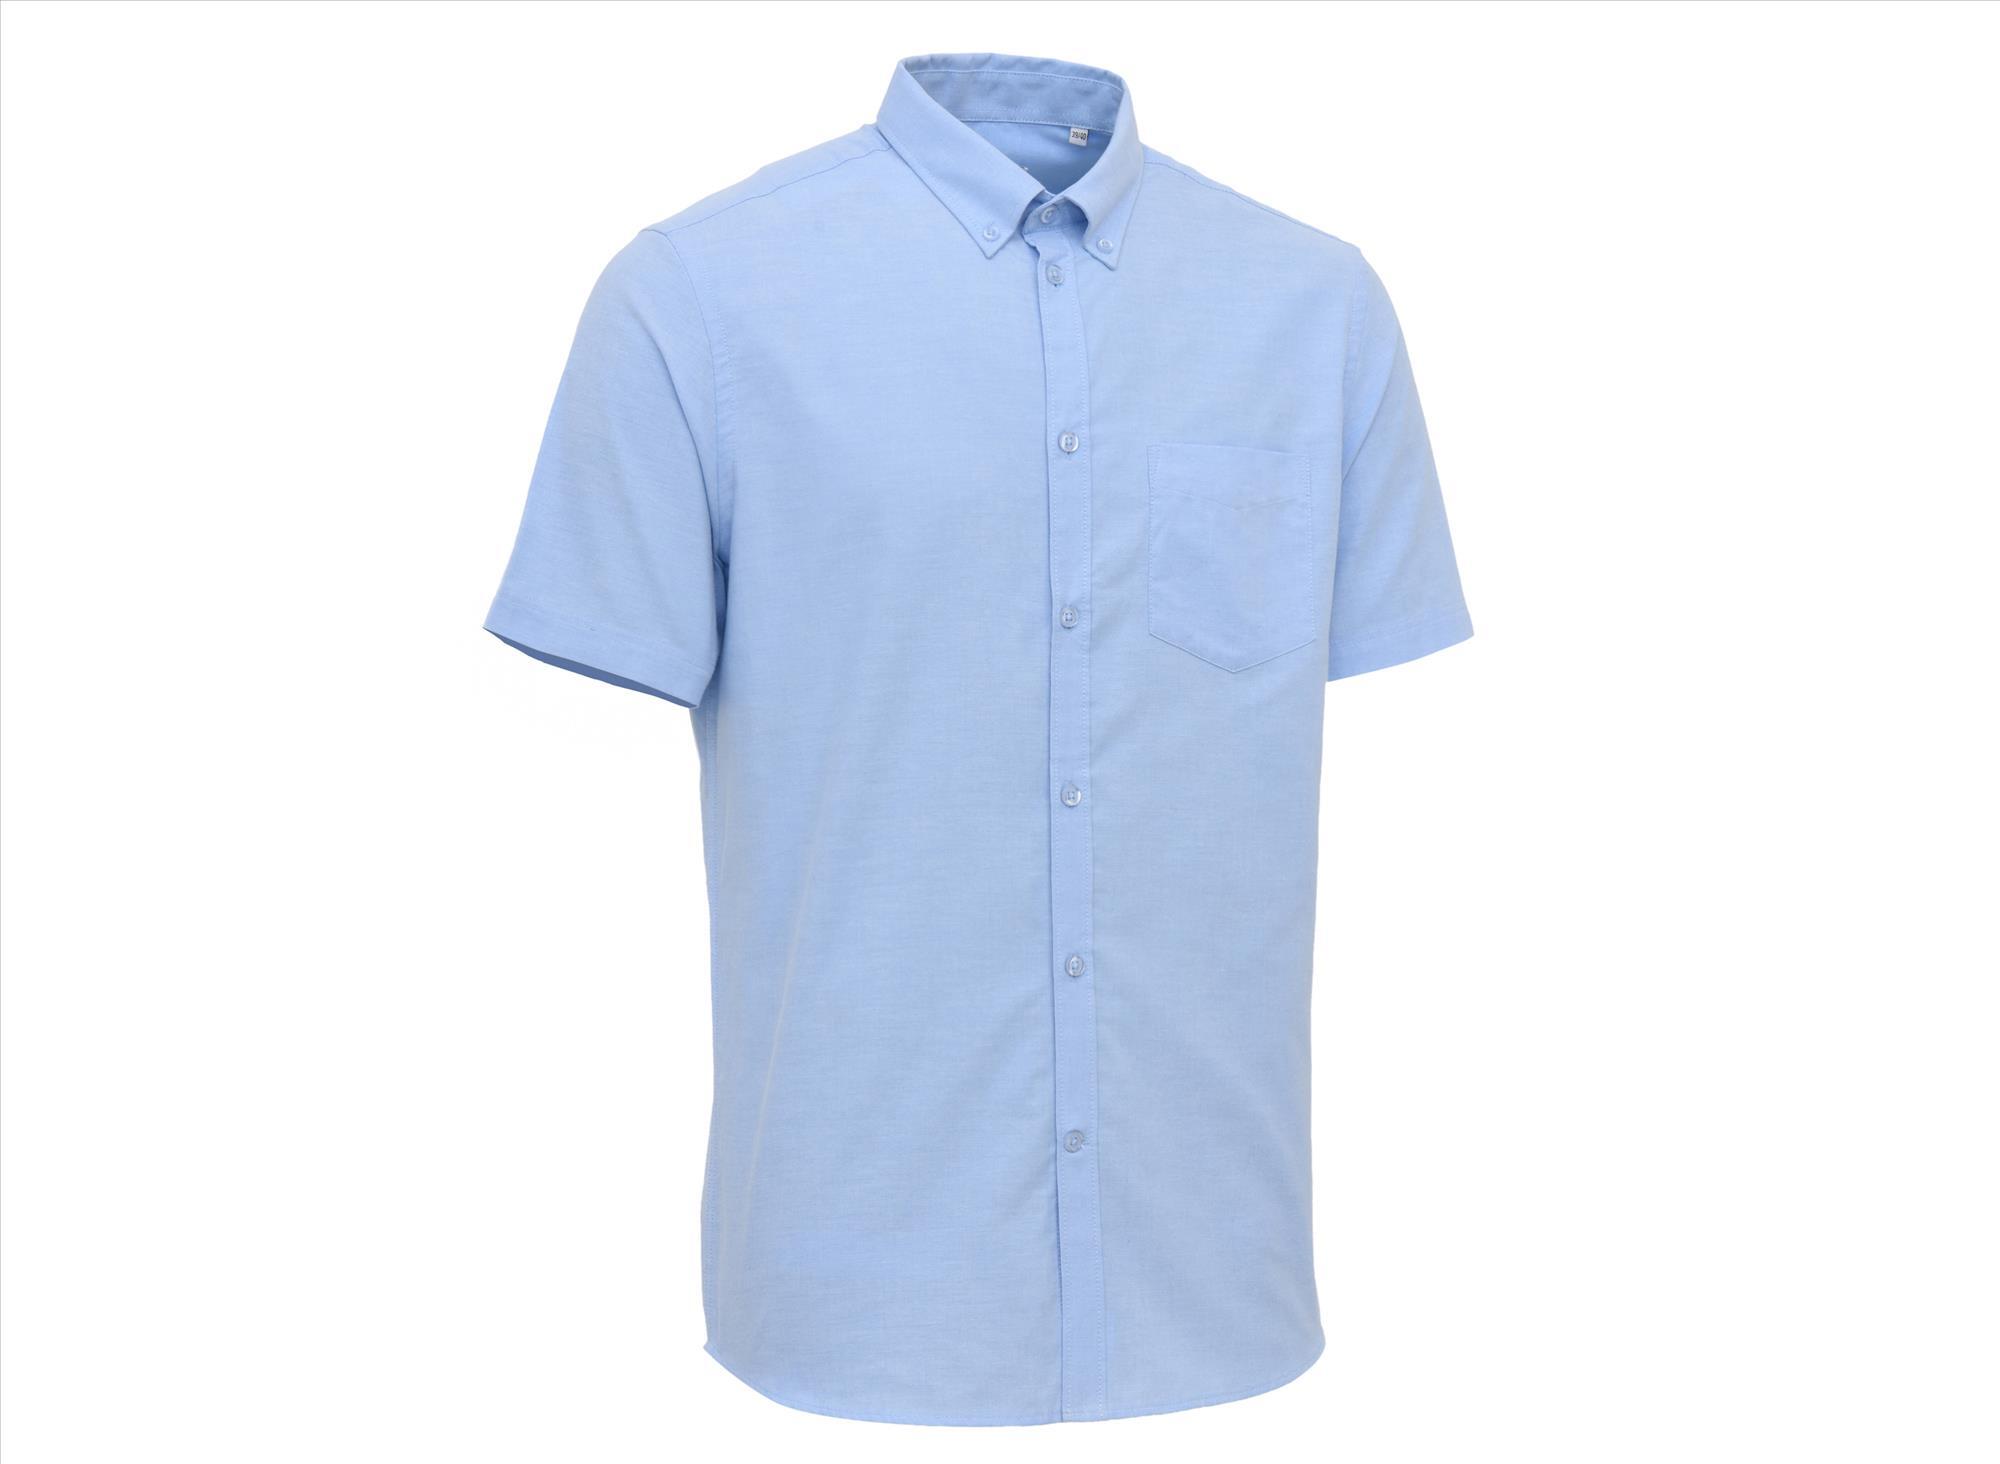 Heren overhemd korte mouw hemelsblauw personaliseren